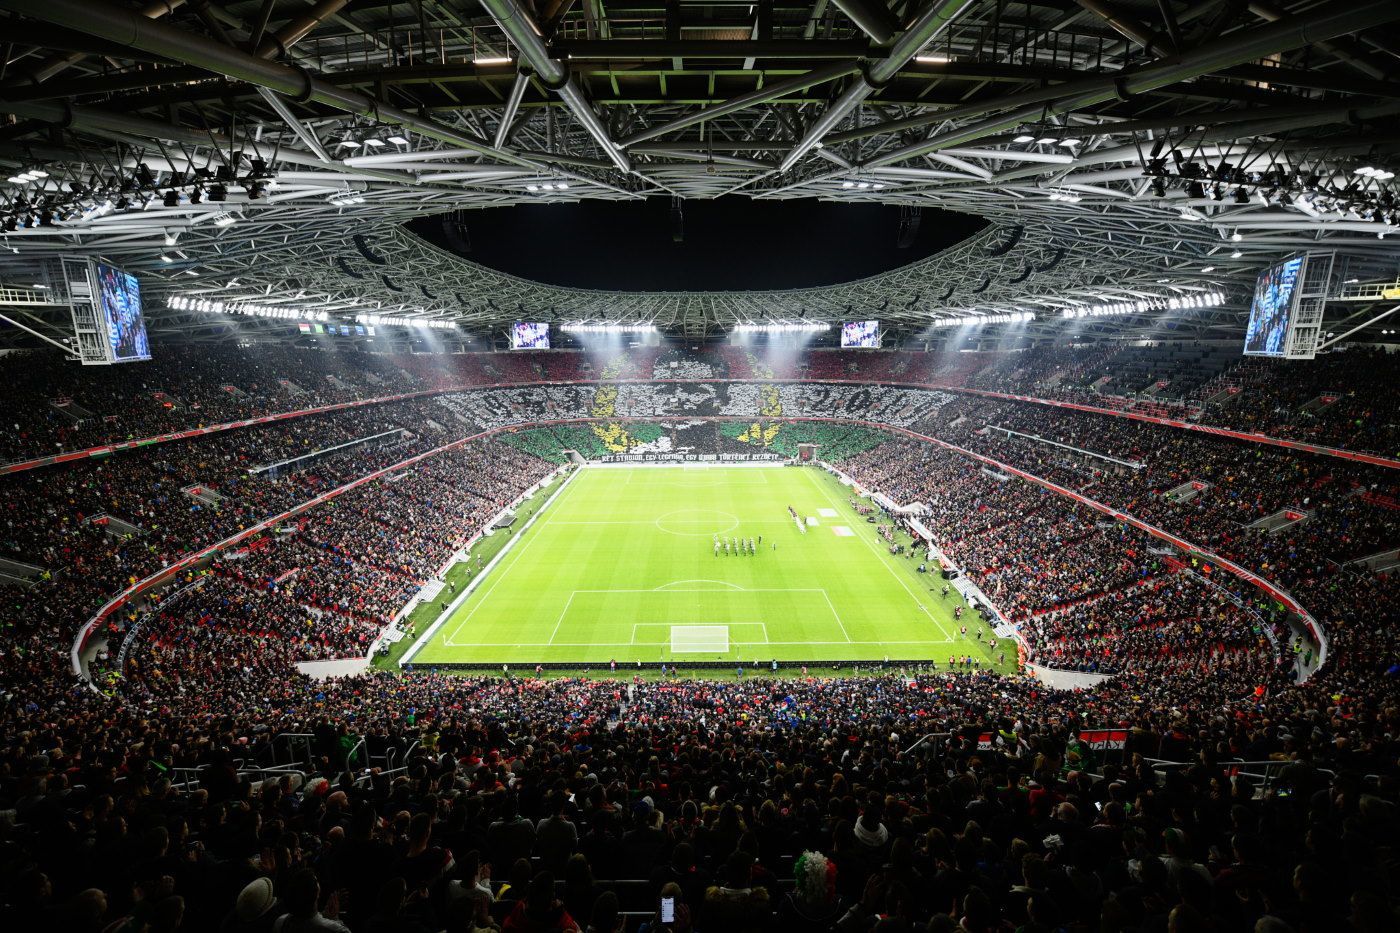 38 тысяч в Петербурге и Баку, полный стадион в Будапеште и пустота в Мюнхене. Всё о допуске зрителей на арены Евро 2020